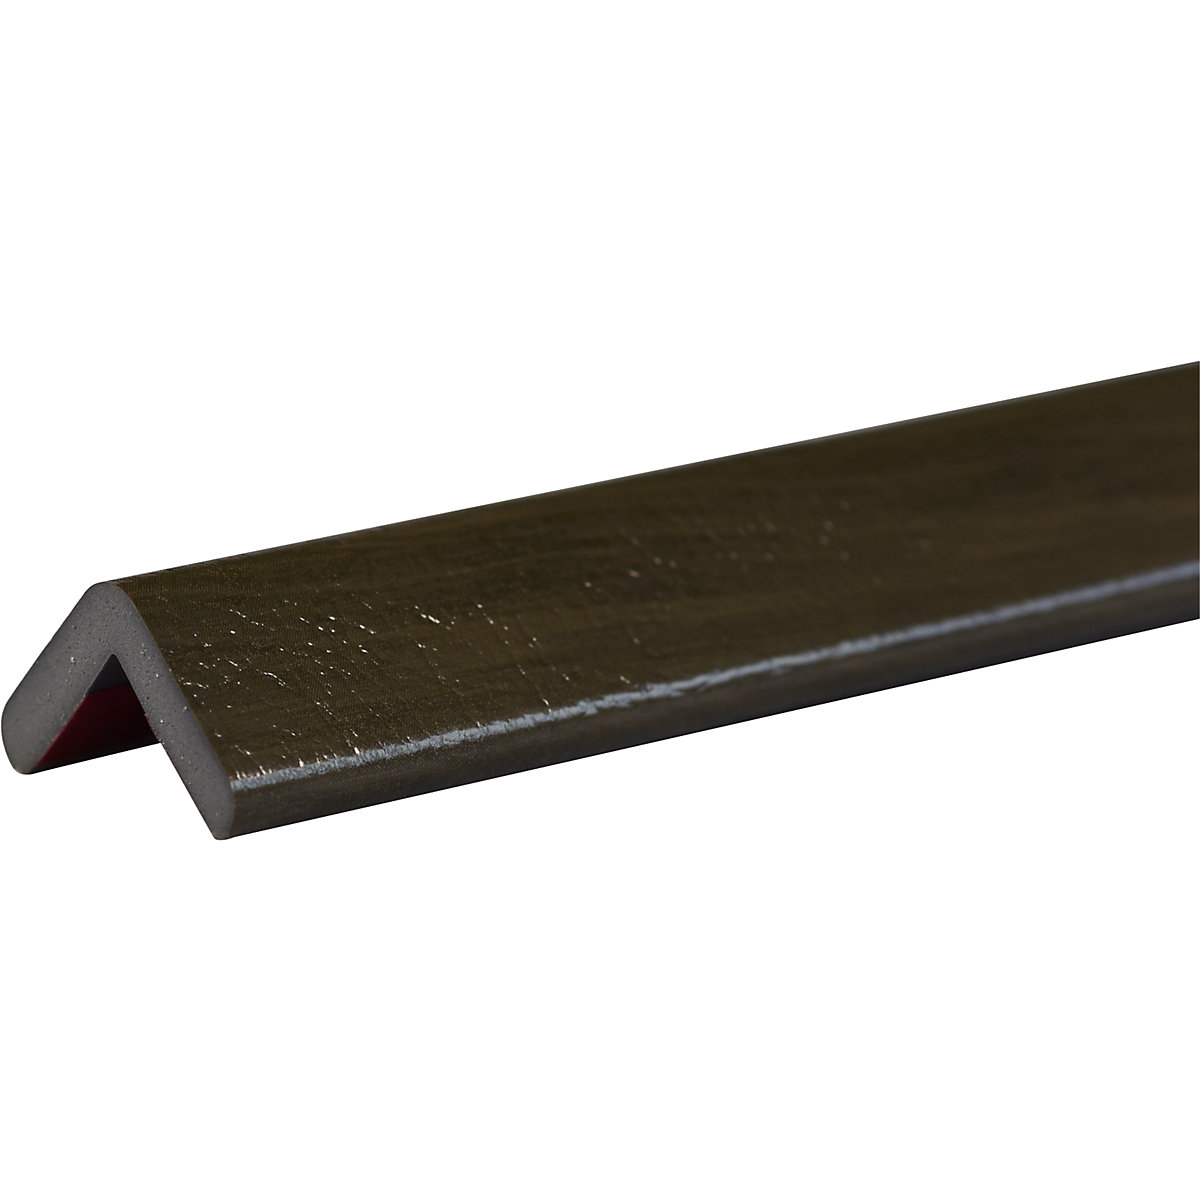 Knuffi®-hoekbescherming – SHG, type H, stuk van 1 m, gecoat hout kaki-14